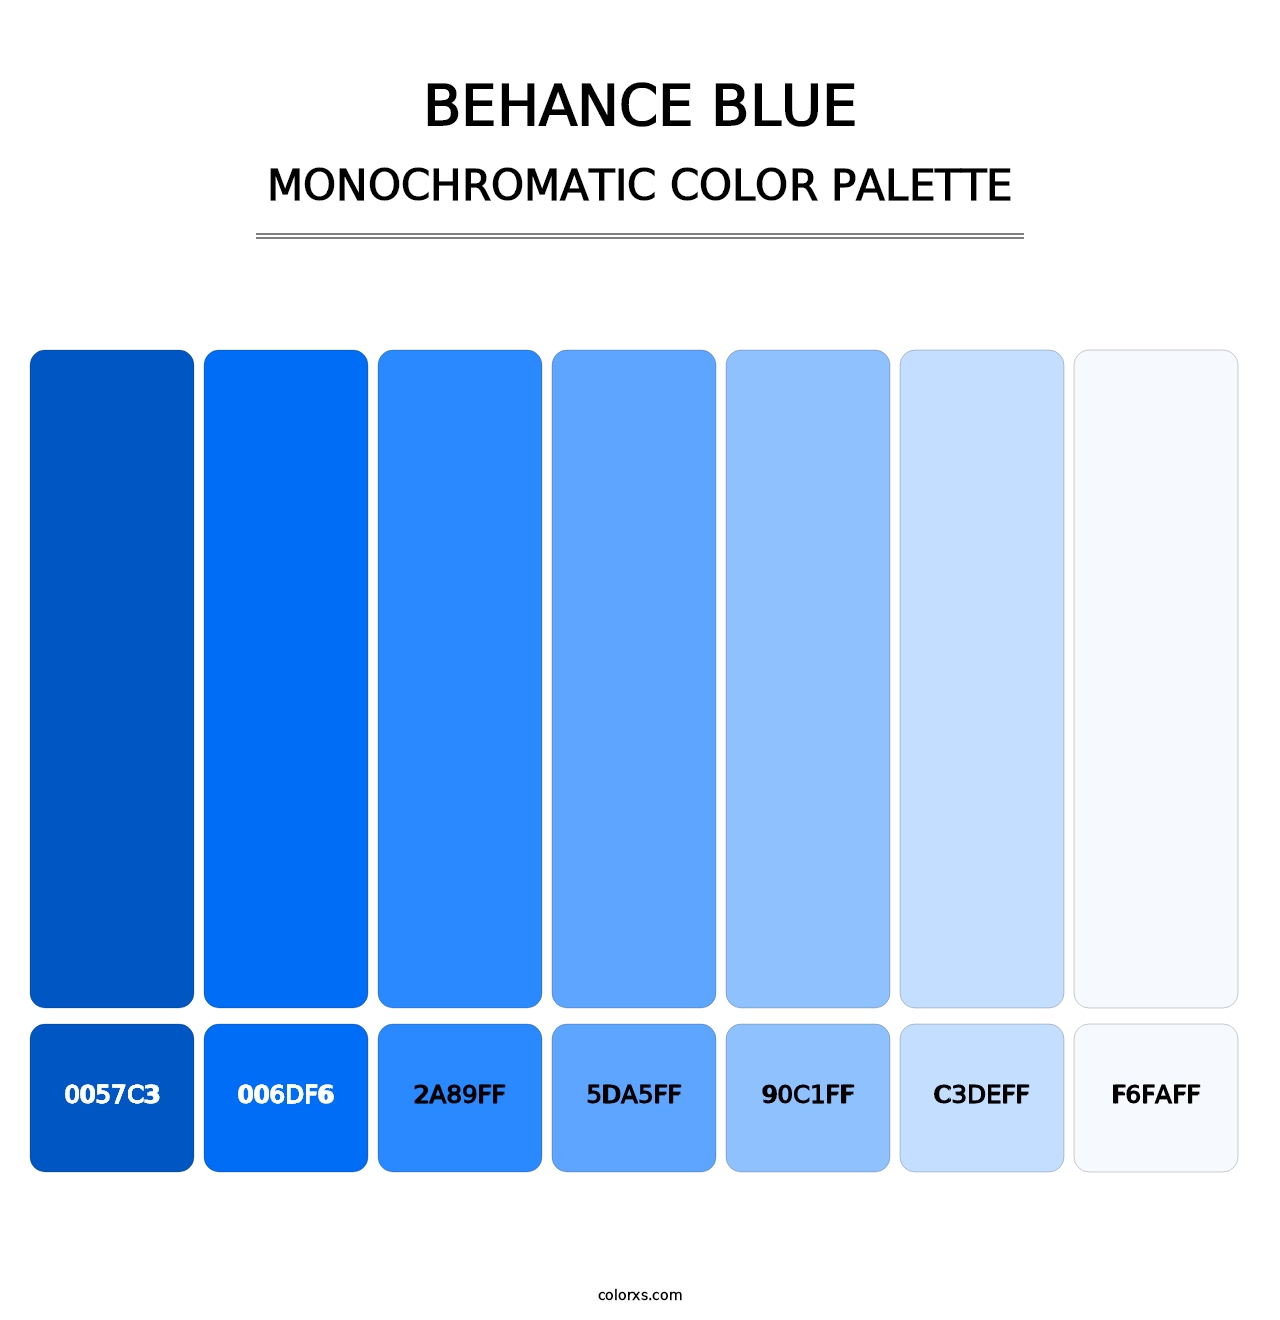 Behance Blue - Monochromatic Color Palette